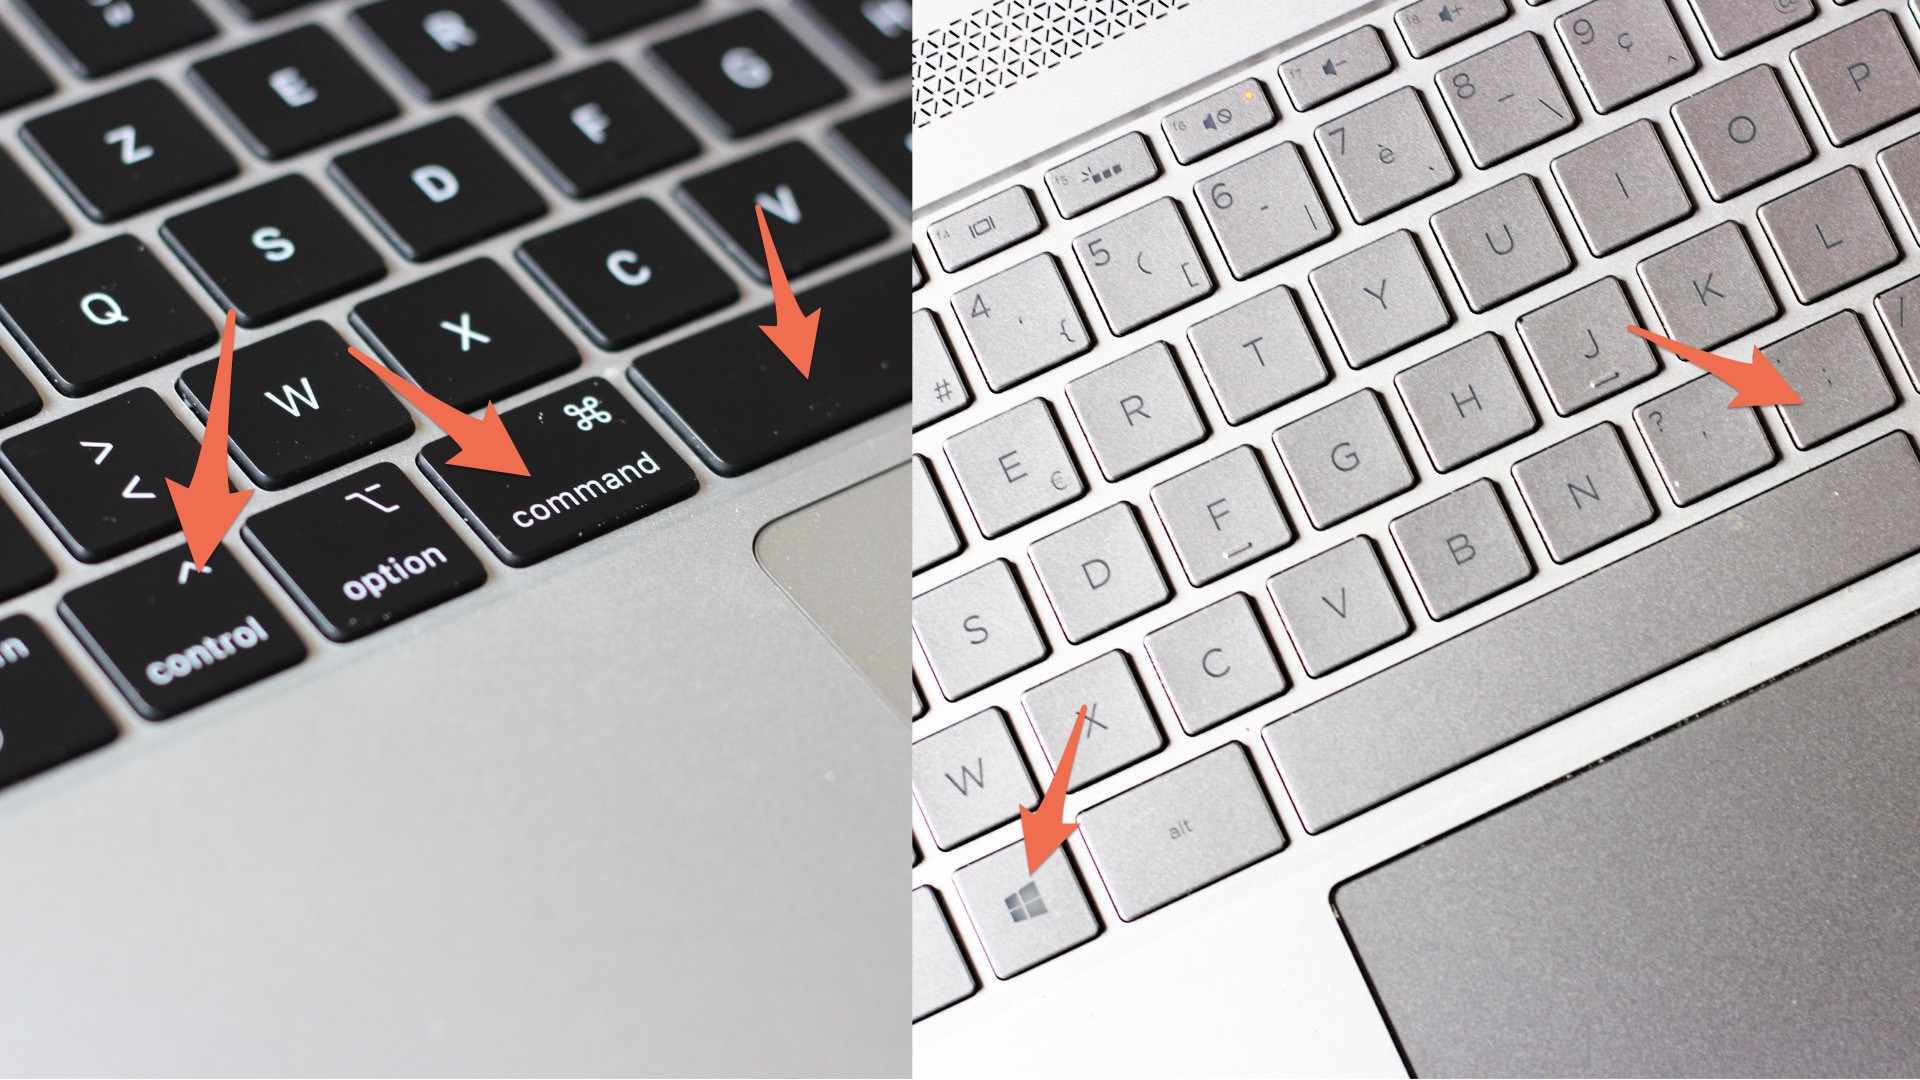 MacBook - Les raccourcis clavier et manipulation des fenêtres